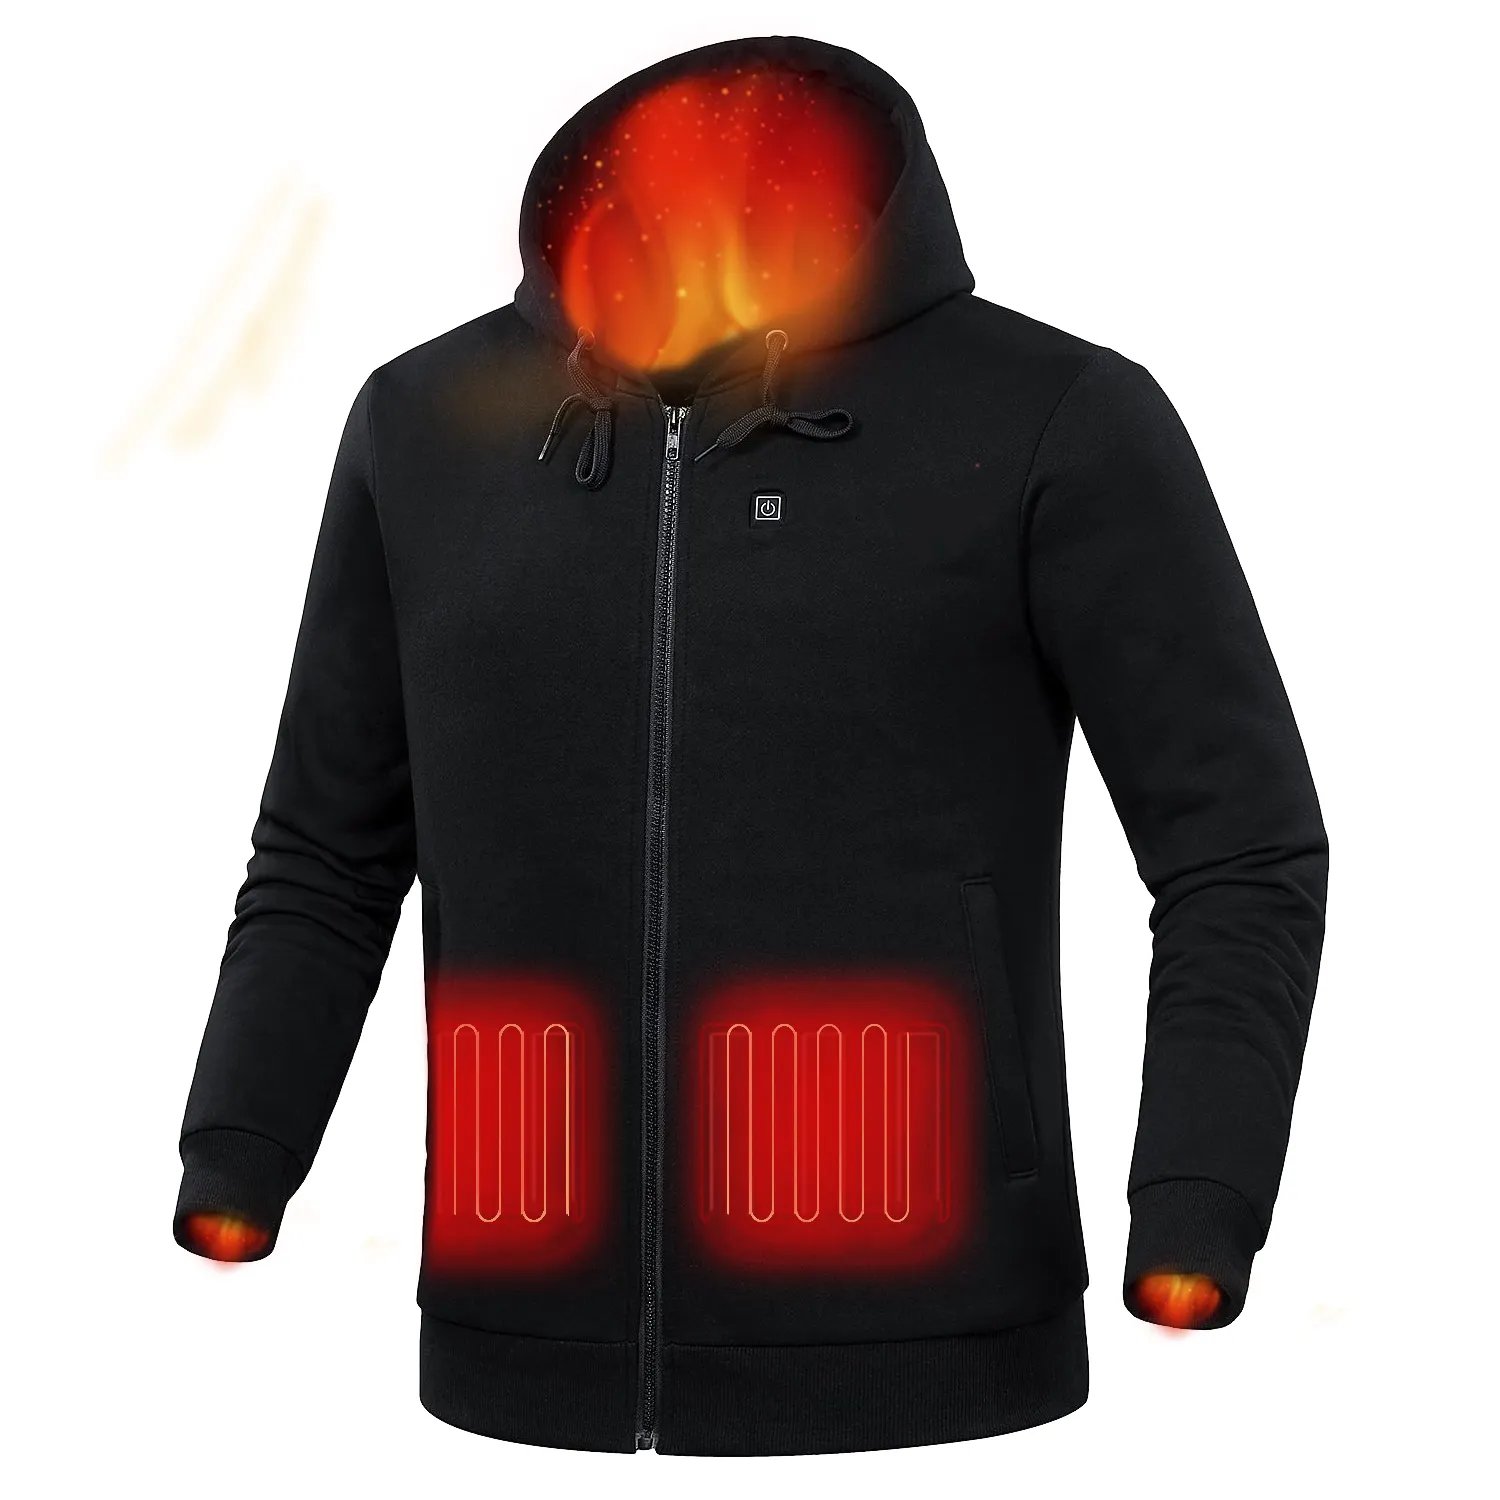 OEM डिजाइन यूनिसेक्स Sweatshirt महिलाओं और पुरुषों के लिए खेल यूएसबी गरम हूडि सर्दियों